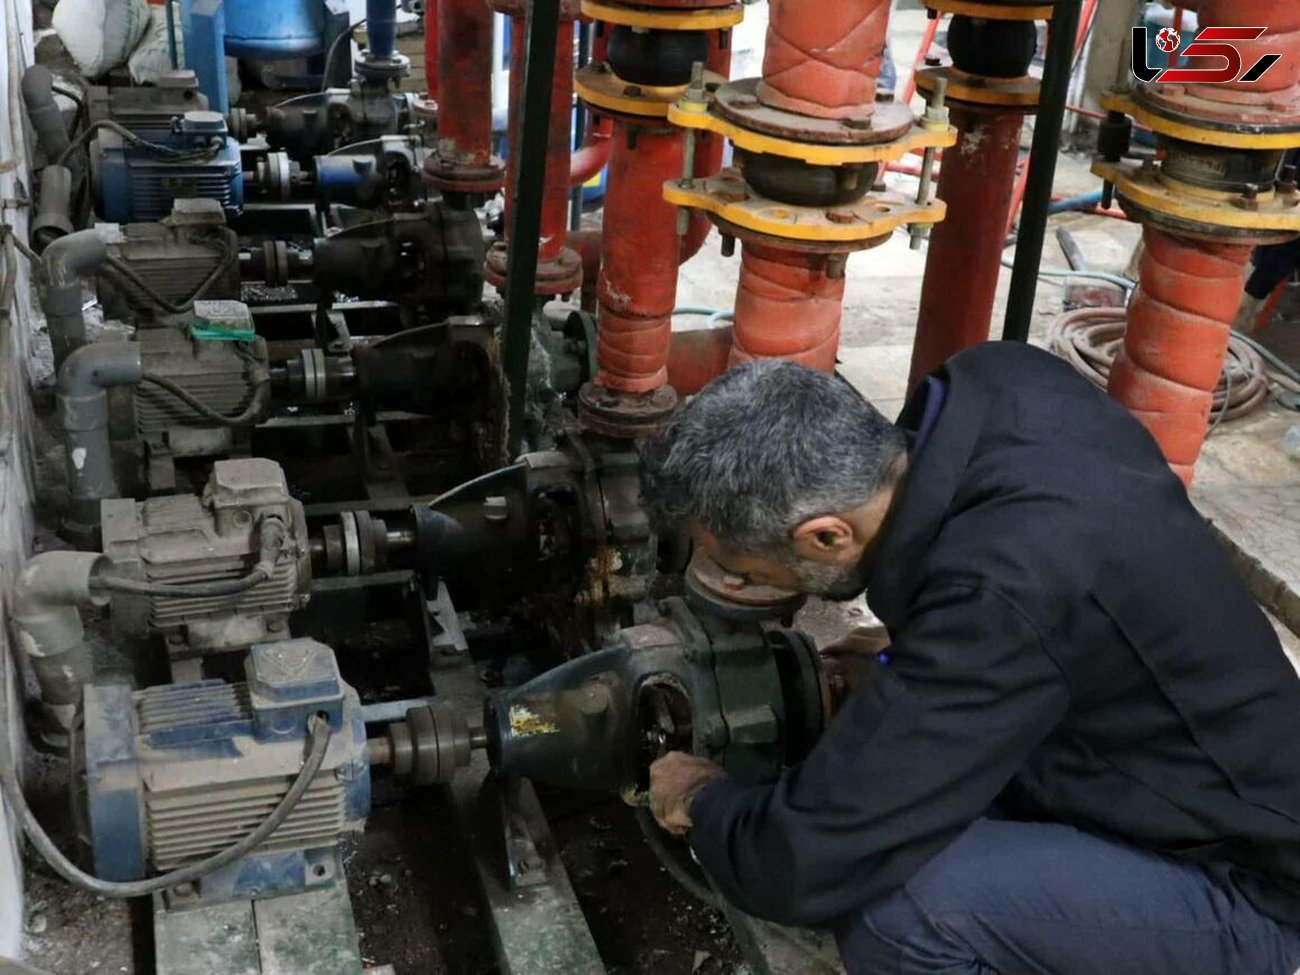 اصلاح و بهینه سازی رایگان 2840 موتورخانه مشترکین گاز در استان لرستان